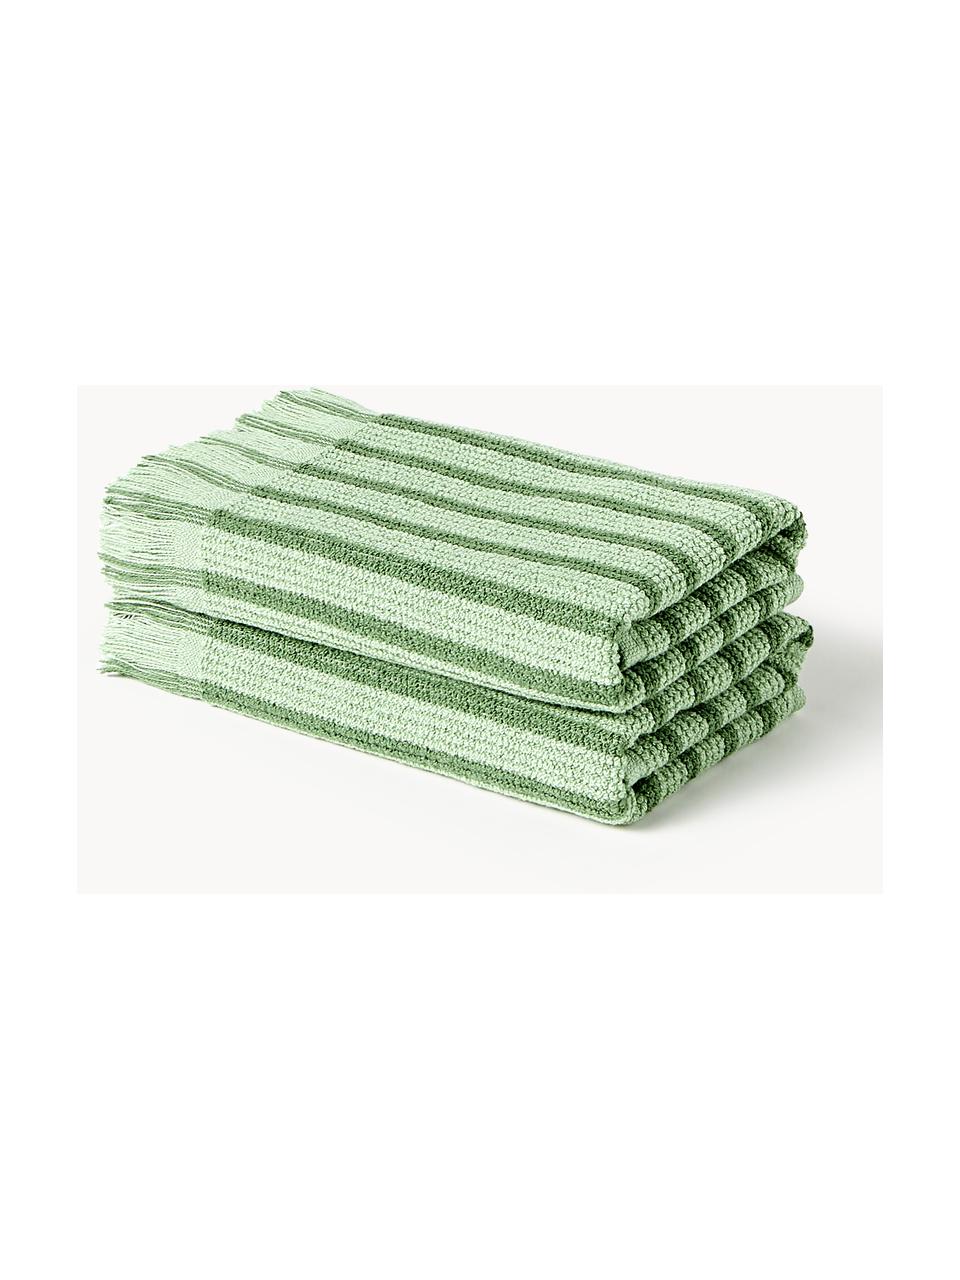 Handdoek Irma in verschillende formaten, Groen, Handdoek, B 50 x L 100 cm, 2 stuks